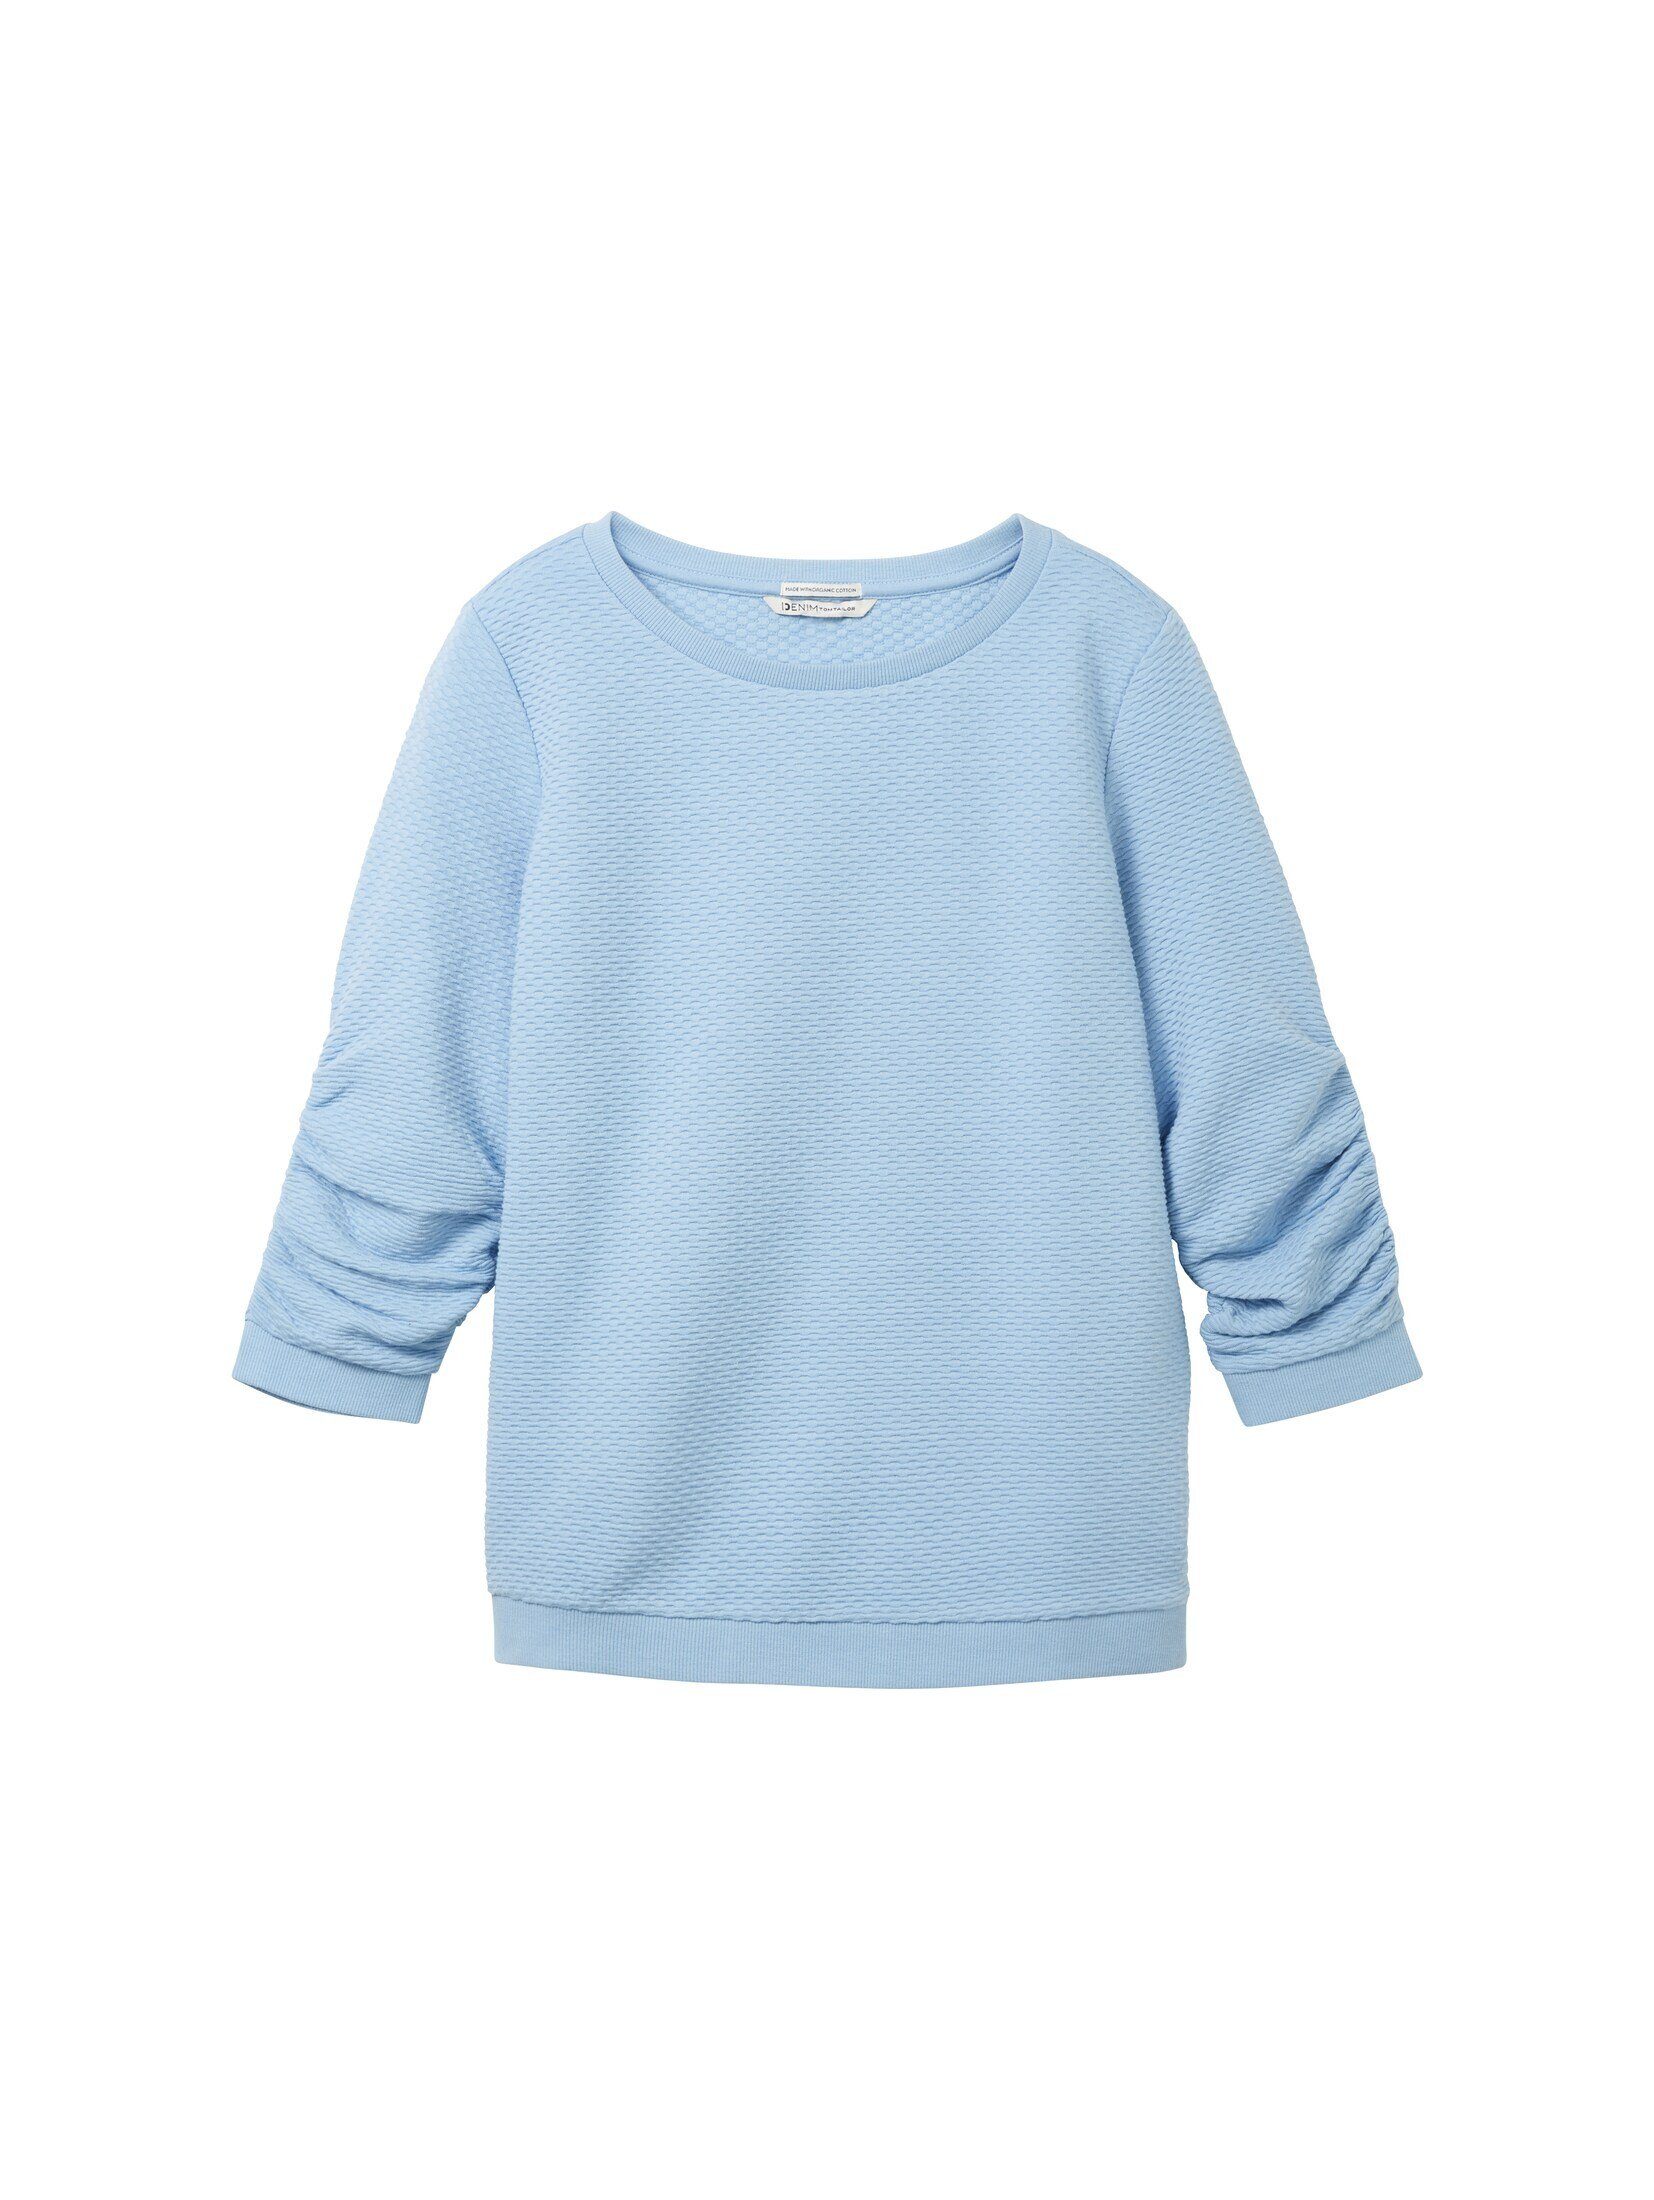 TOM Sweatshirt Denim Soft Sweatshirt Charming TAILOR Blue Strukturiertes